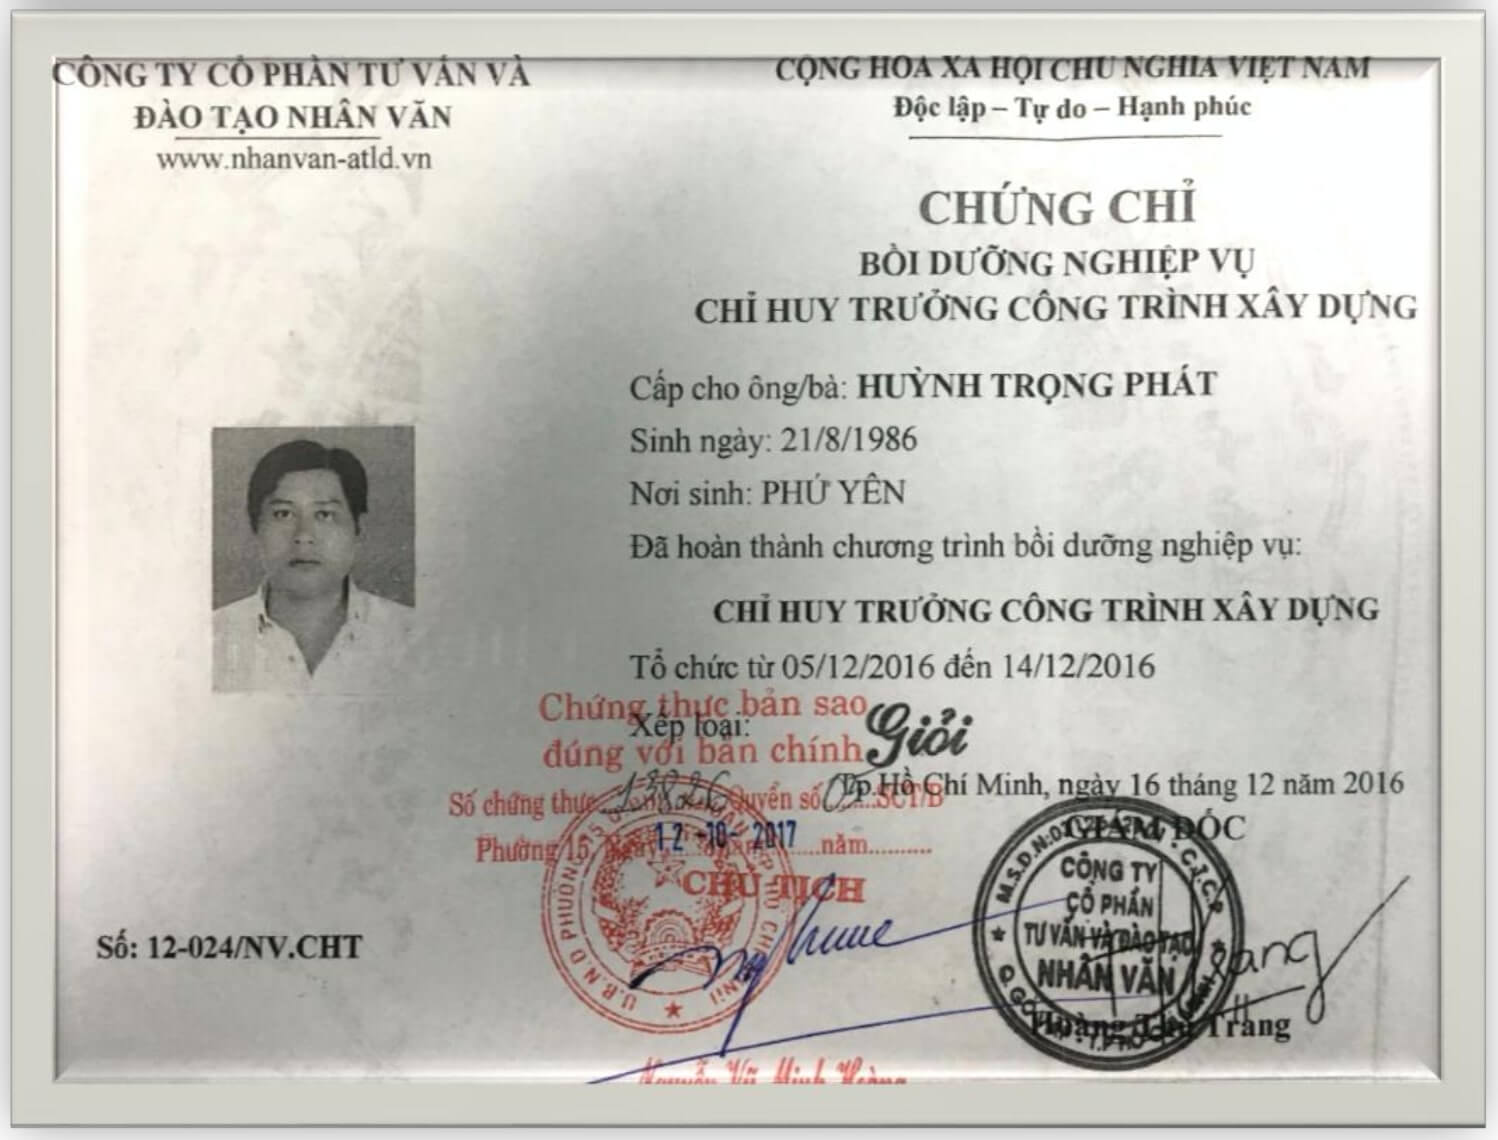 Chung chi Chi huy truong cong trinh kS Huyng Trong Phat